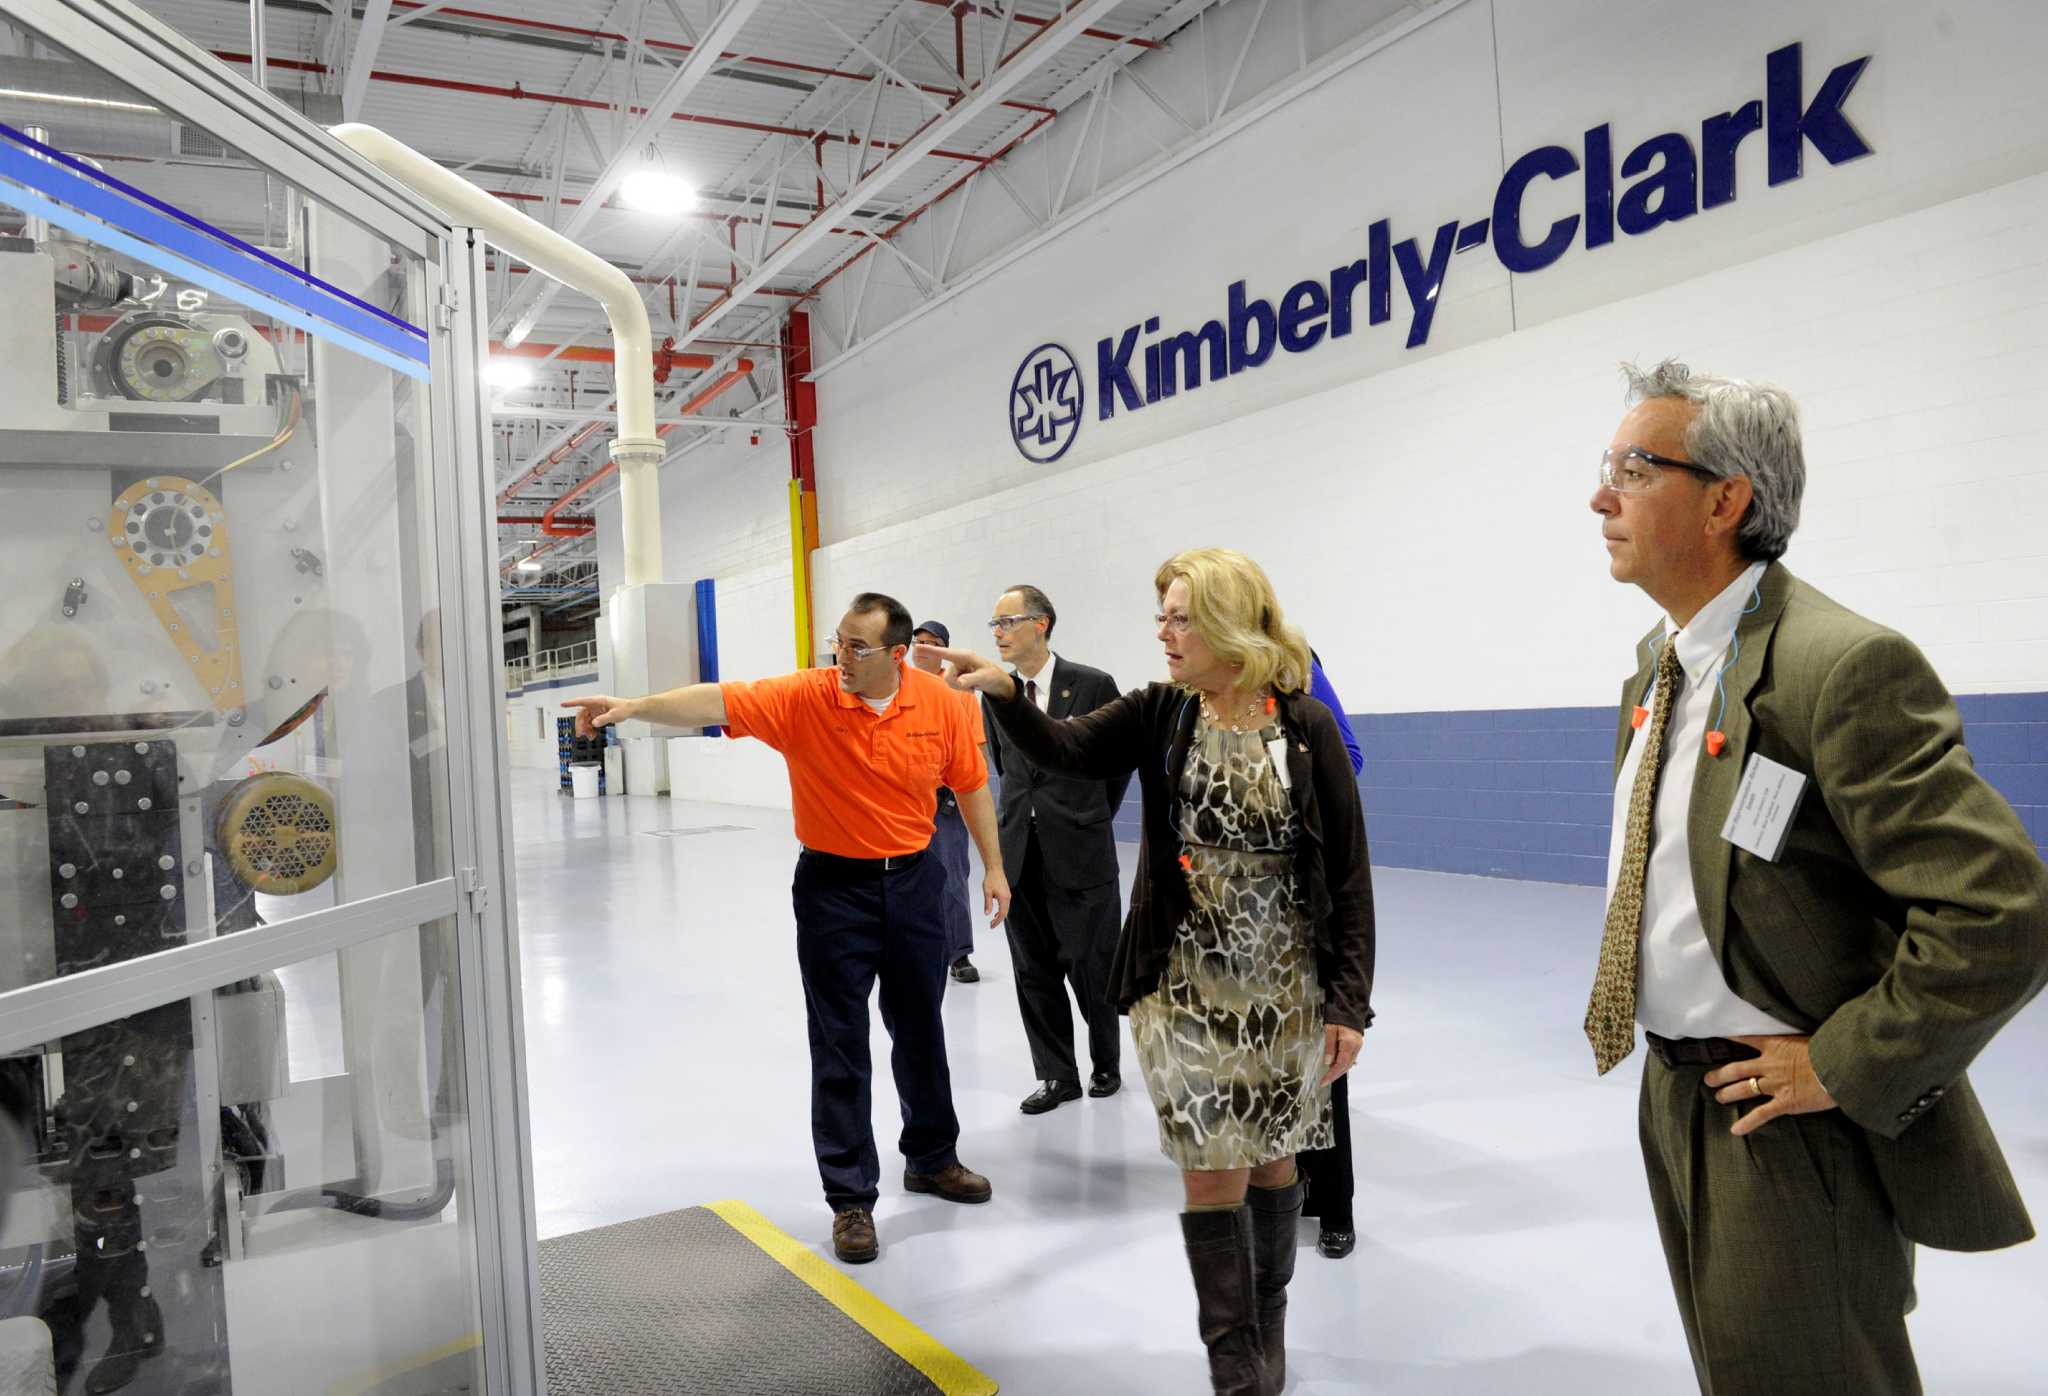 kimberly clark manufacturing facilities